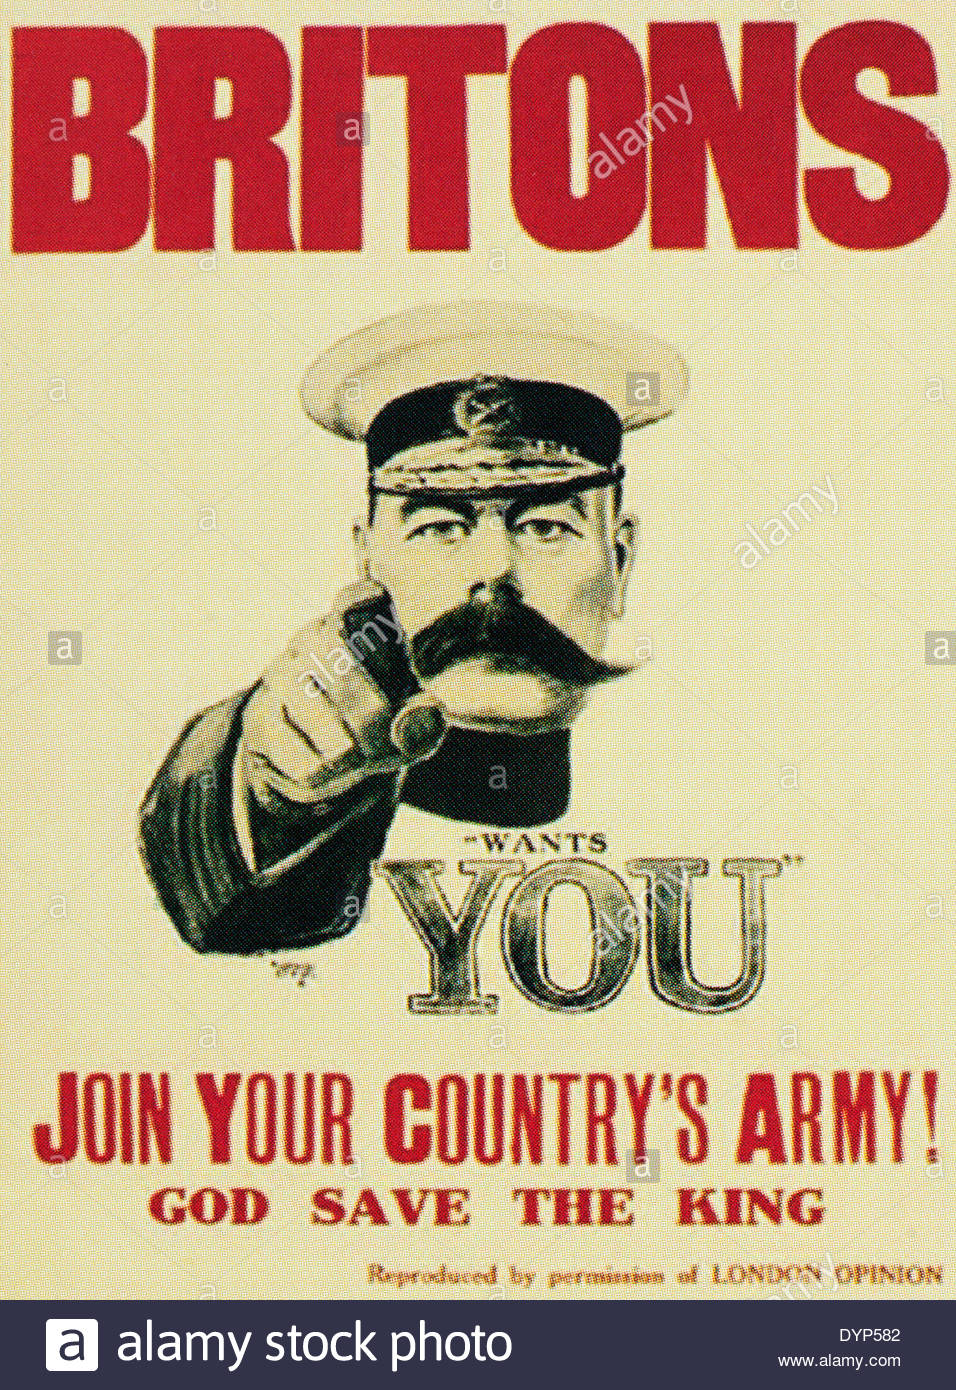 World War One Recruitment Poster Stock Photos & World War One ...